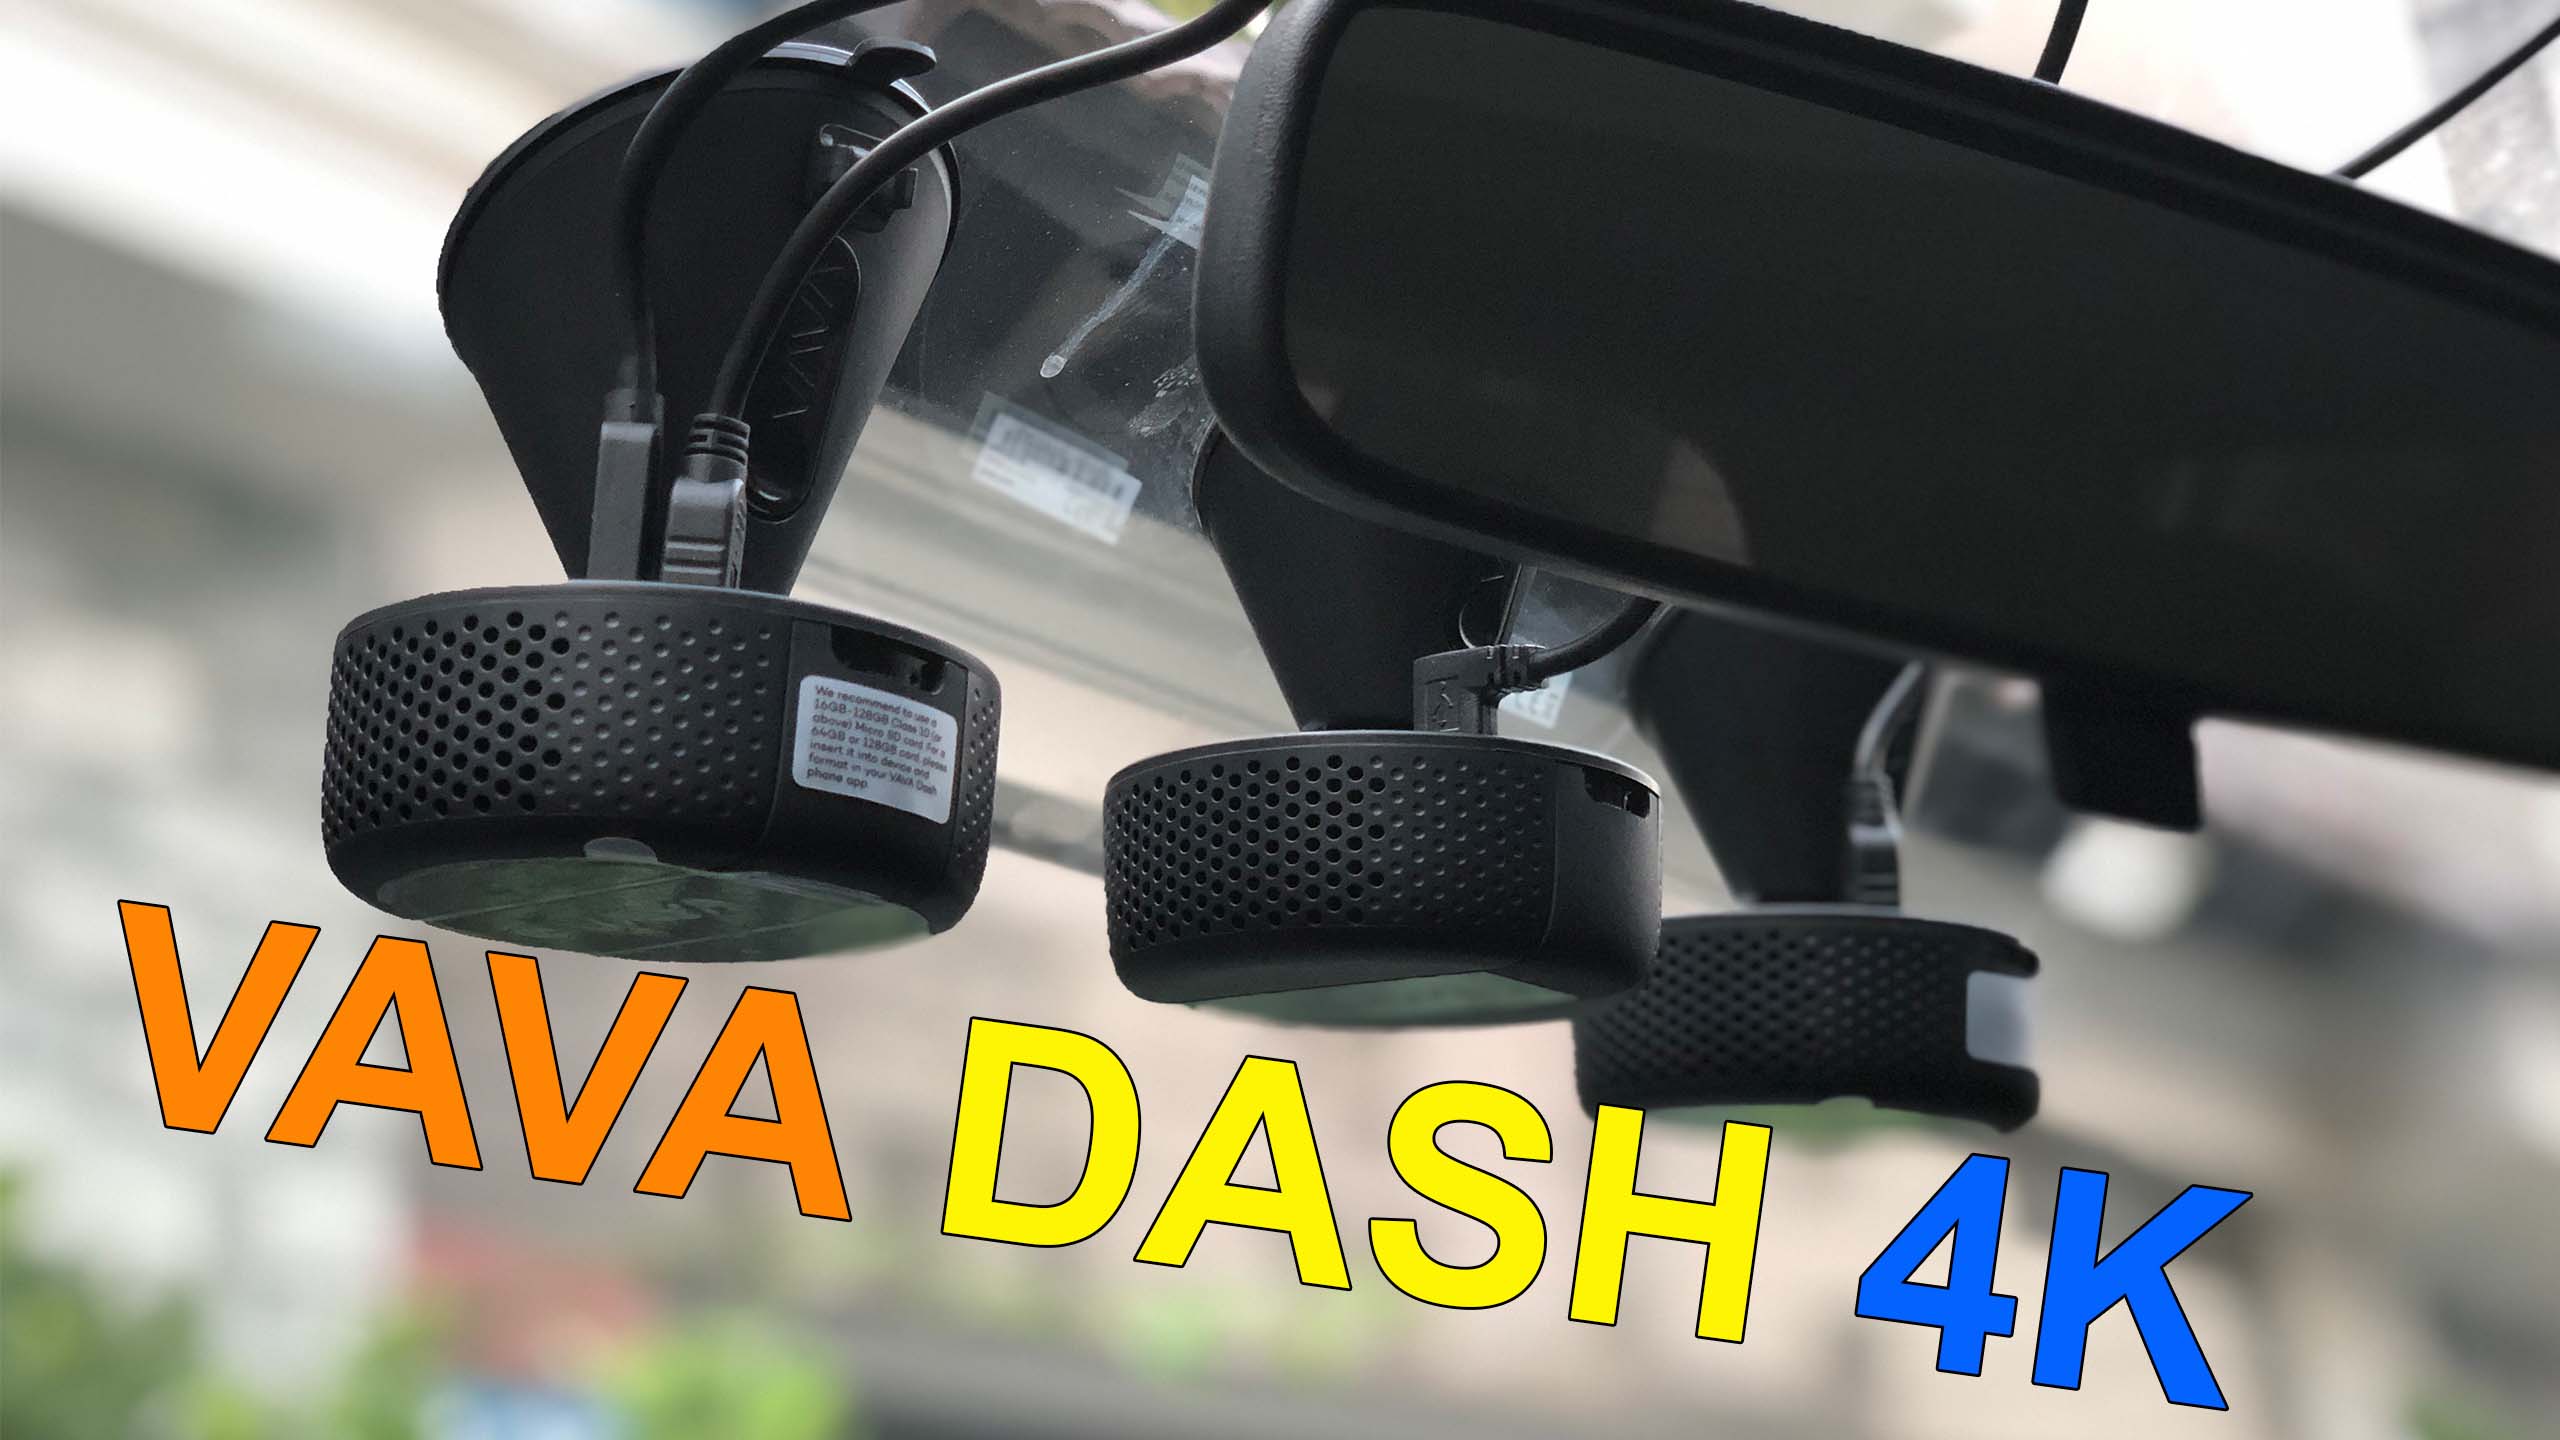 VAVA Dash Cam 4K có xứng đáng với Danh Hiệu?